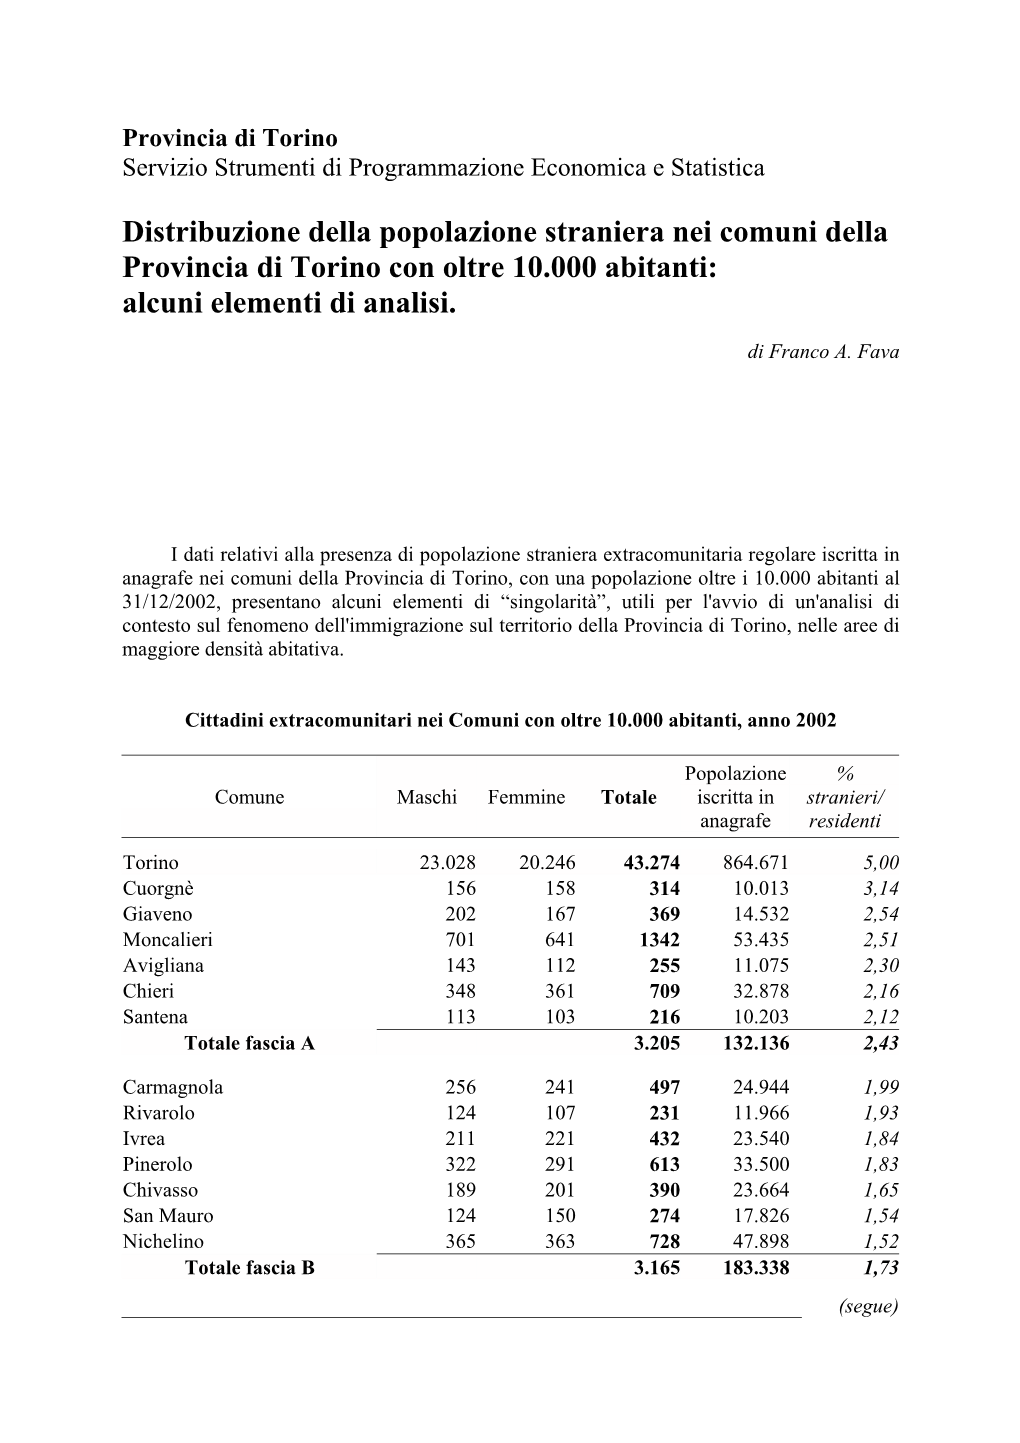 Distribuzione Della Popolazione Straniera Nei Comuni Della Provincia Di Torino Con Oltre 10.000 Abitanti: Alcuni Elementi Di Analisi